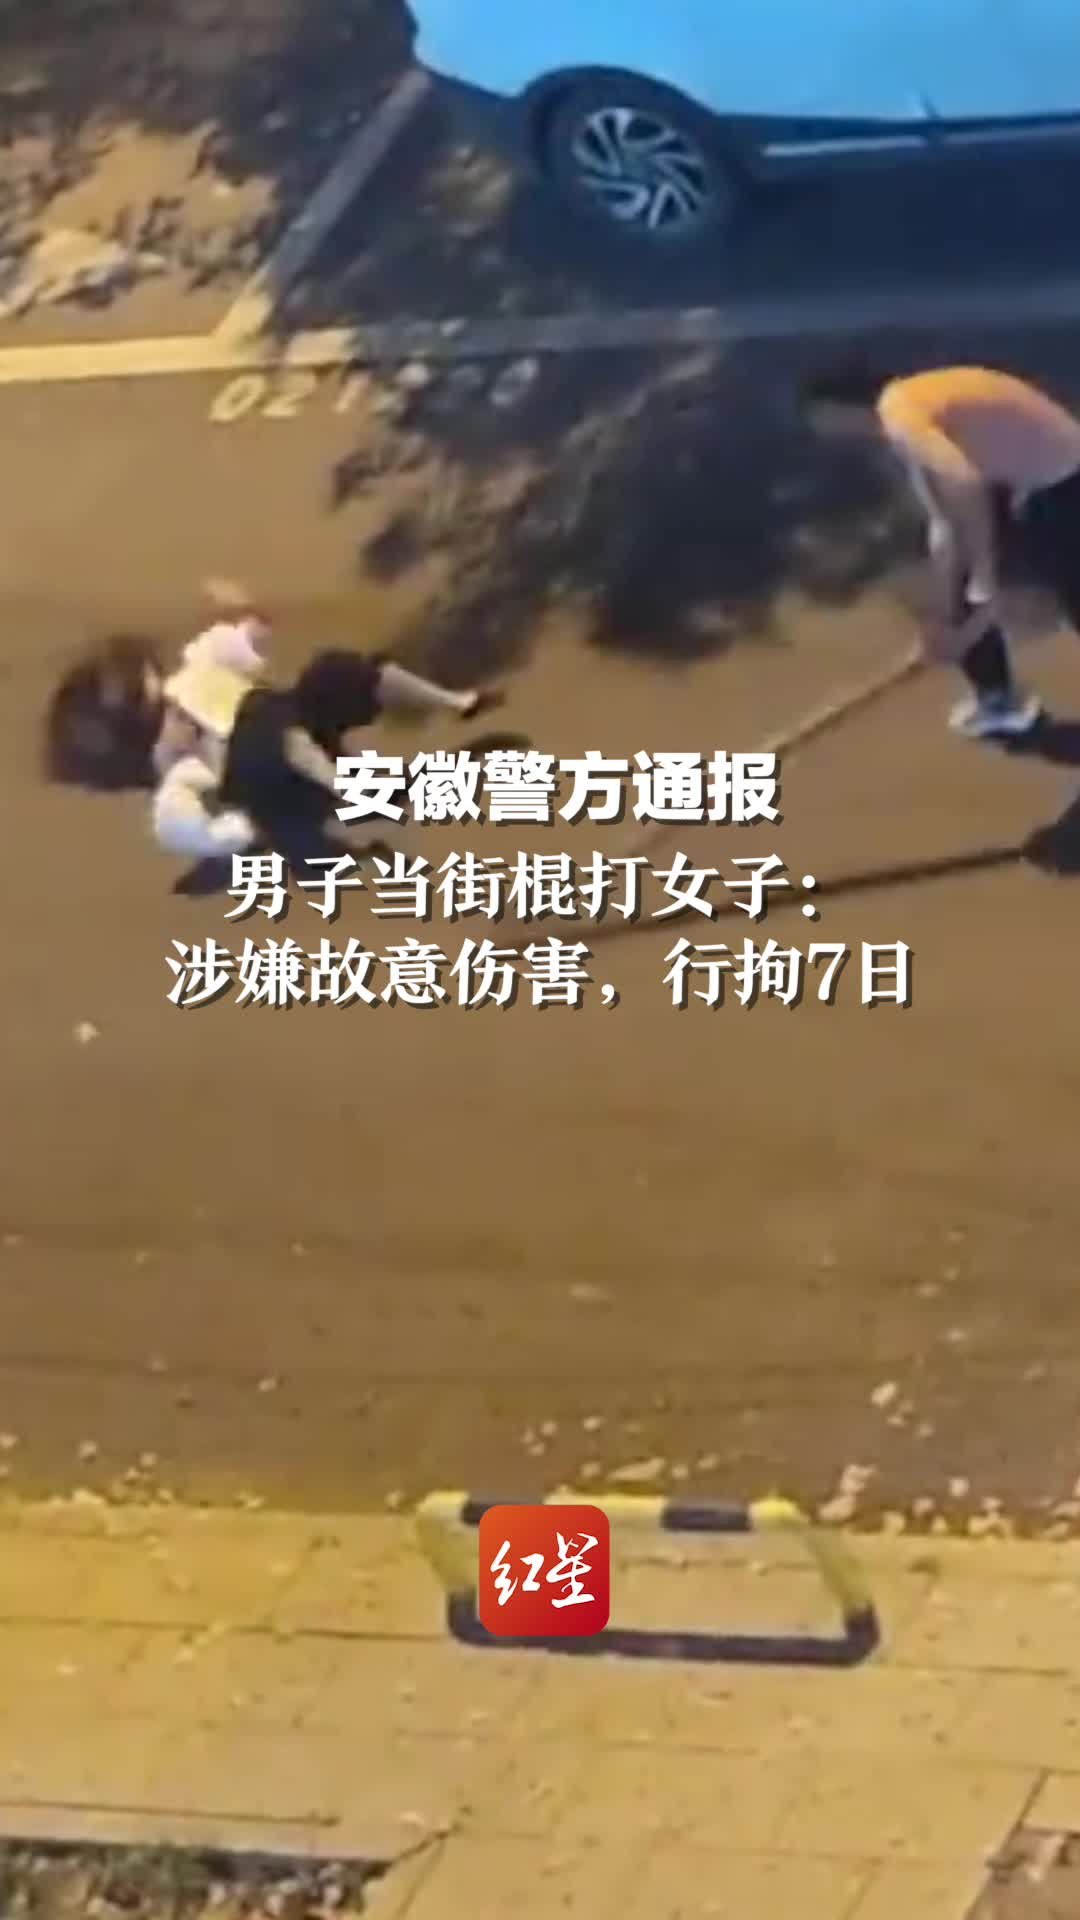 广州天河警方通报女子被当街殴打-荔枝网